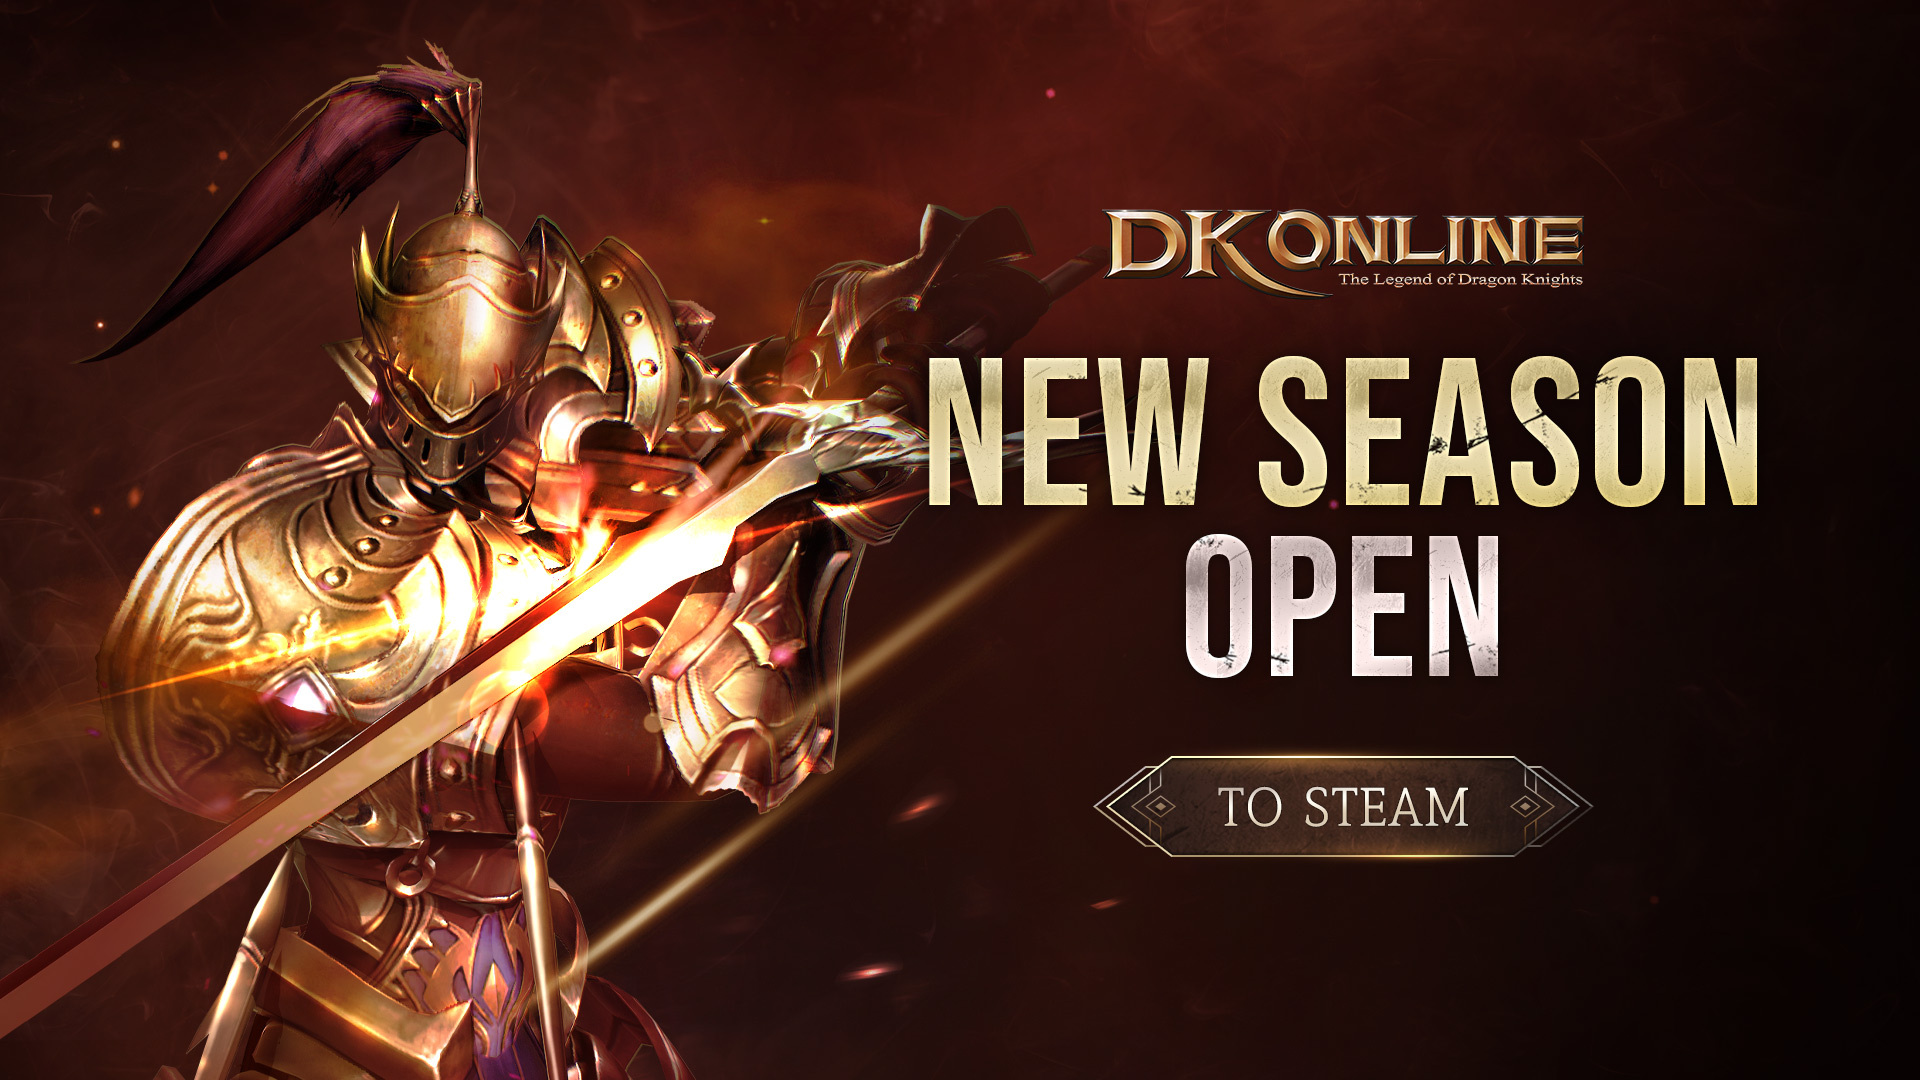 DK Online New Season Open